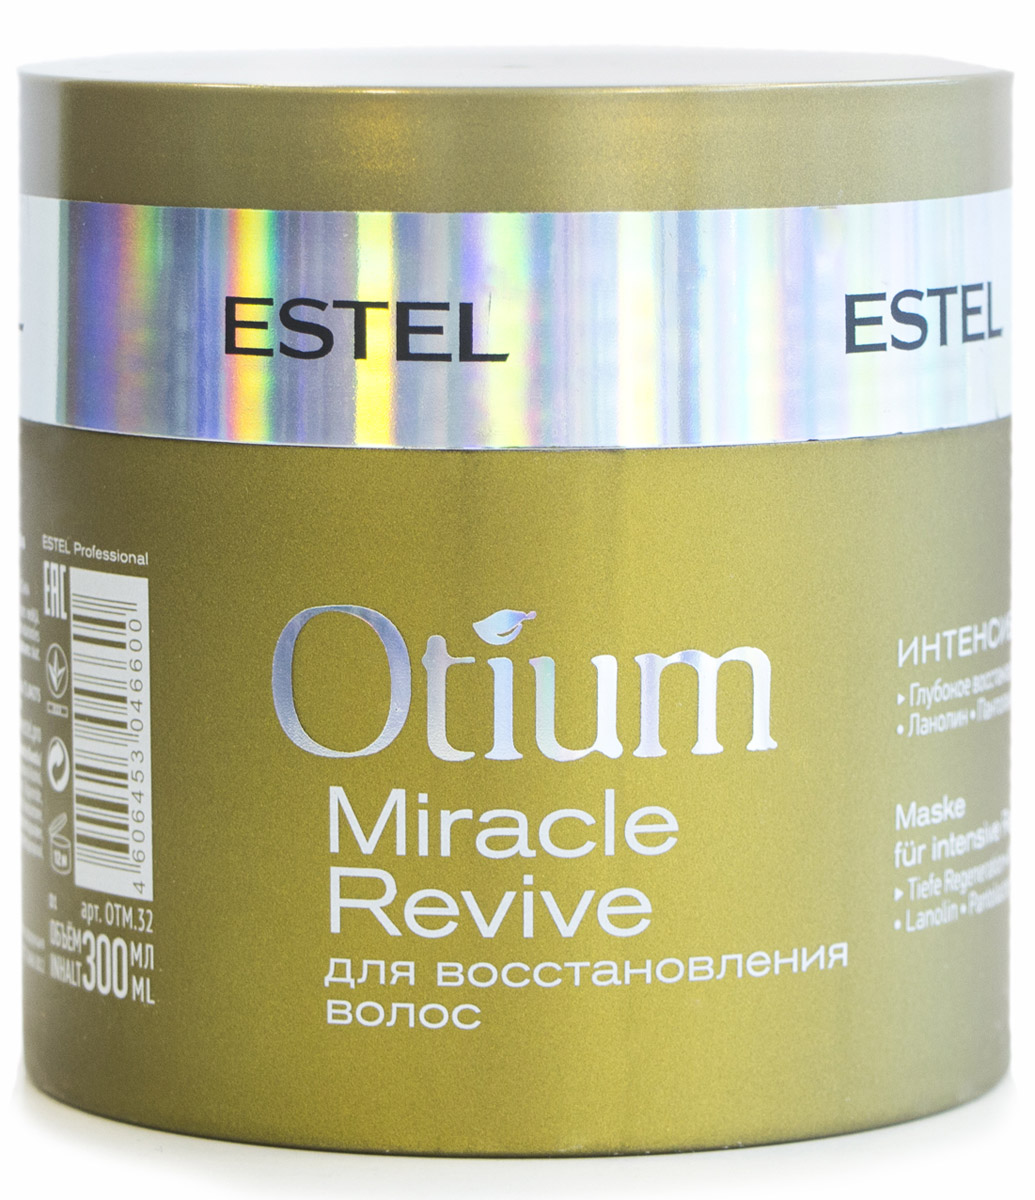 Estel Интенсивная маска для восстановления волос Otium Miracle Revive, 300 мл